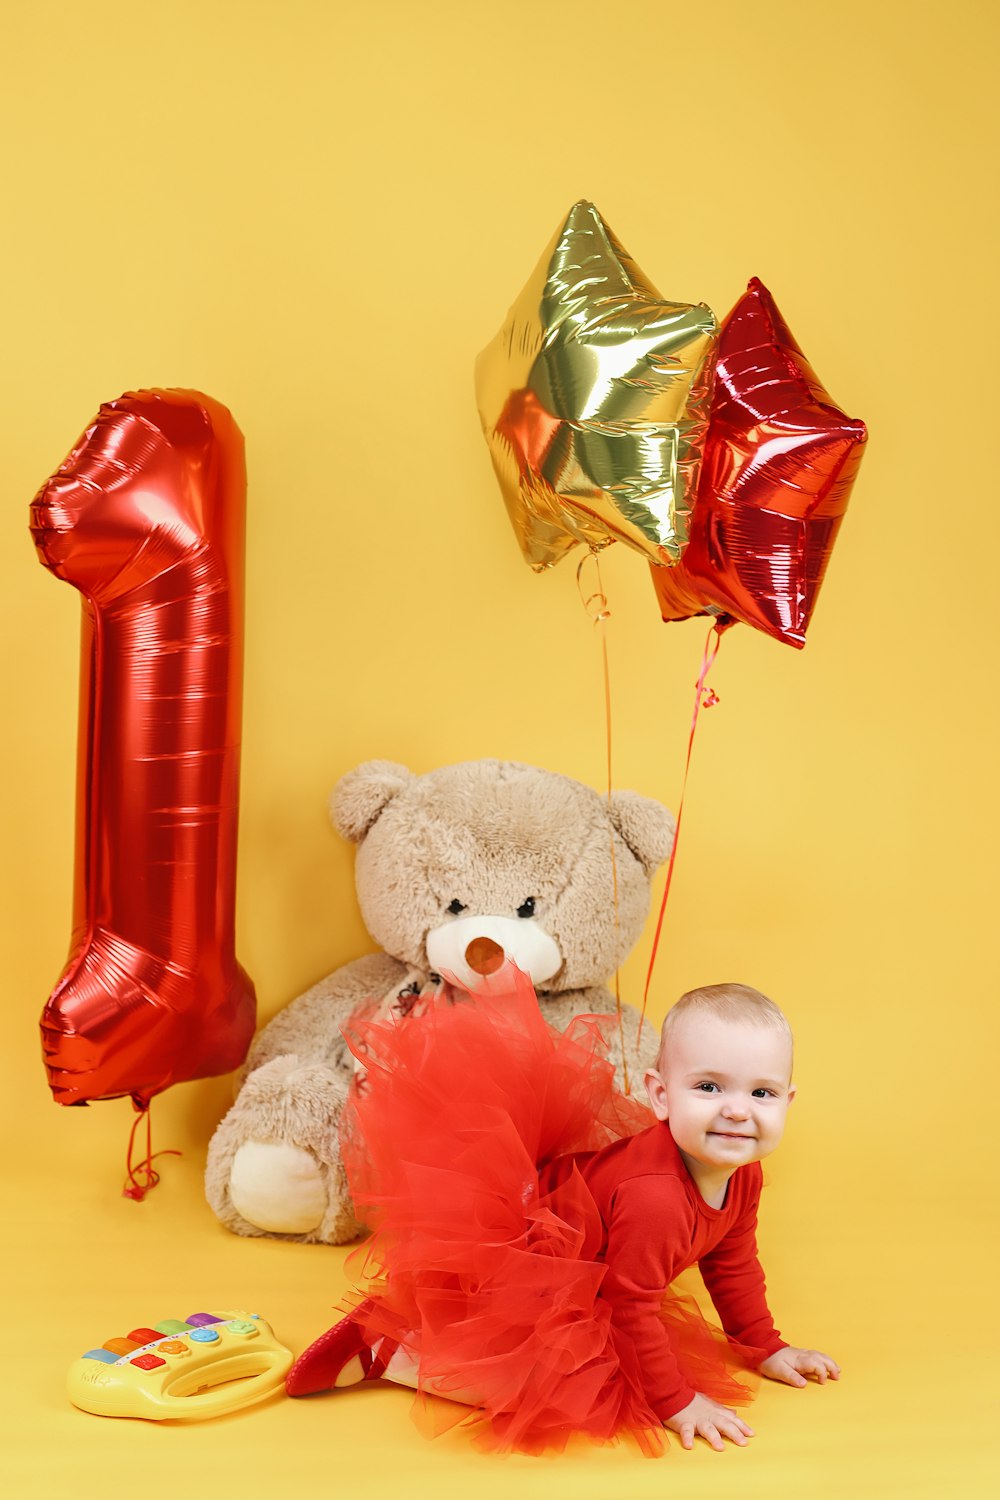 Un bebé sentado junto a un oso de peluche y globos